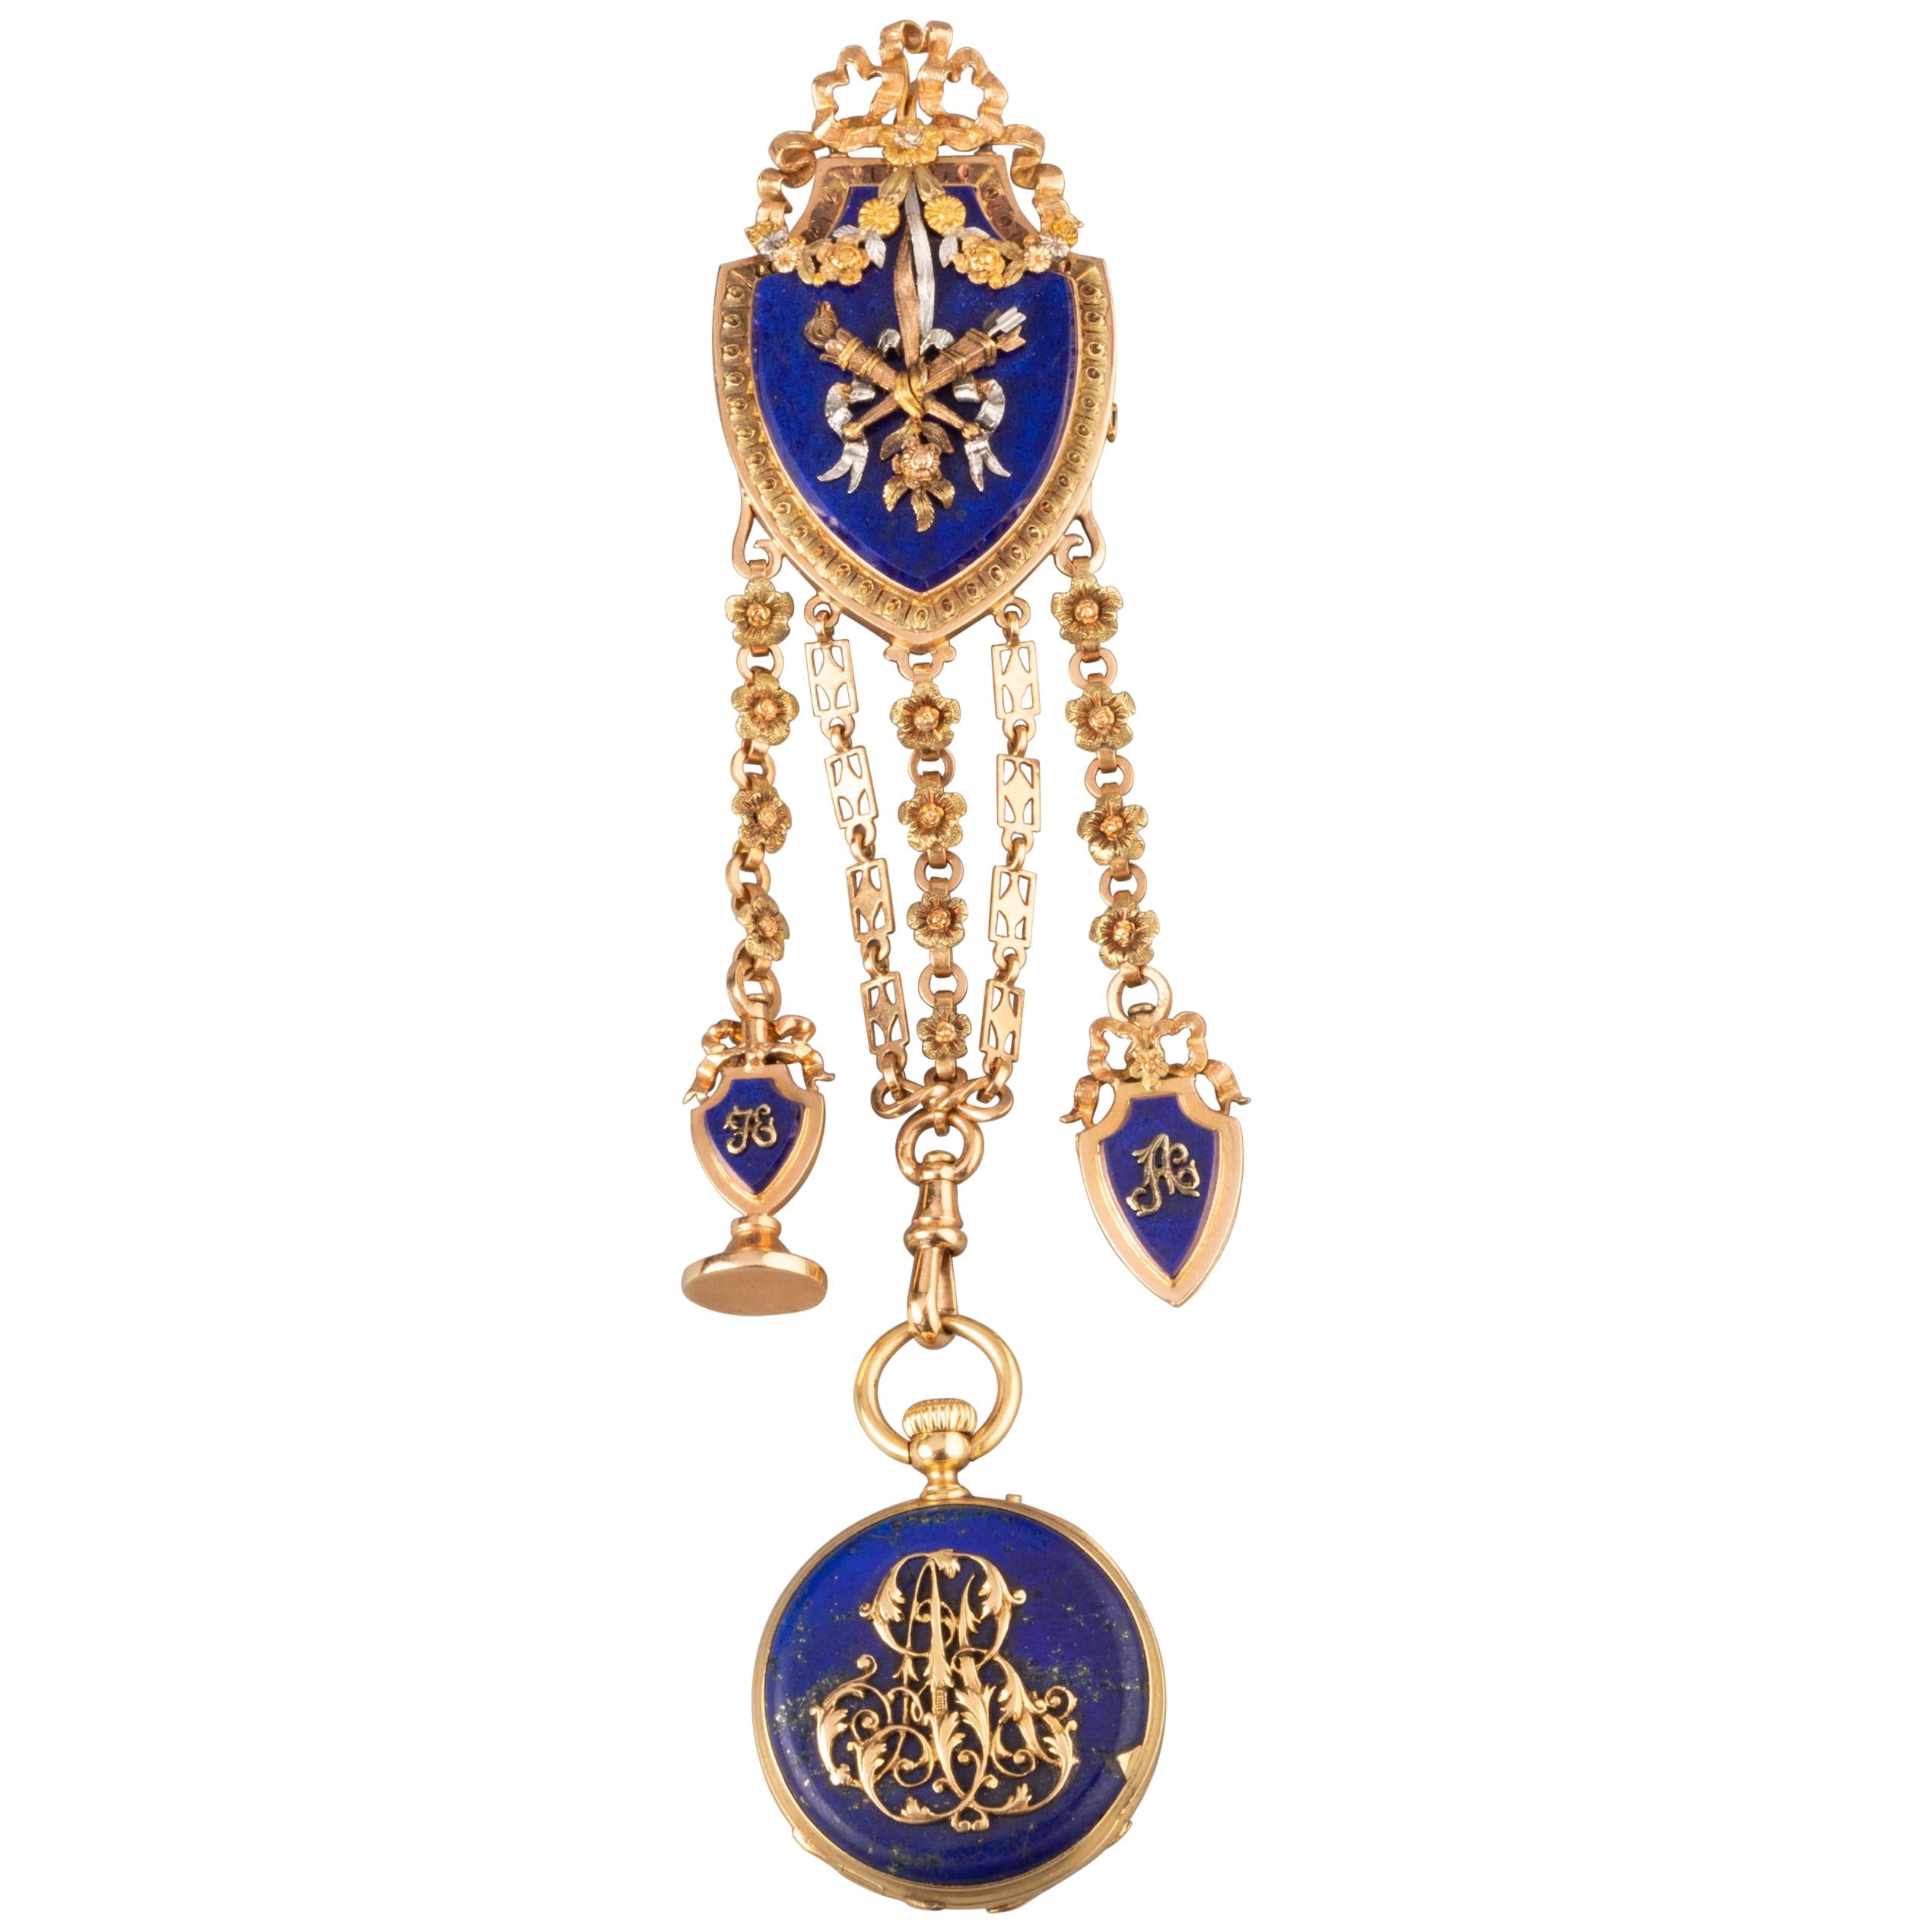 Gold and Lapis Lazuli Antique Châtelaine Brooch by Le Roy & Fils Paris